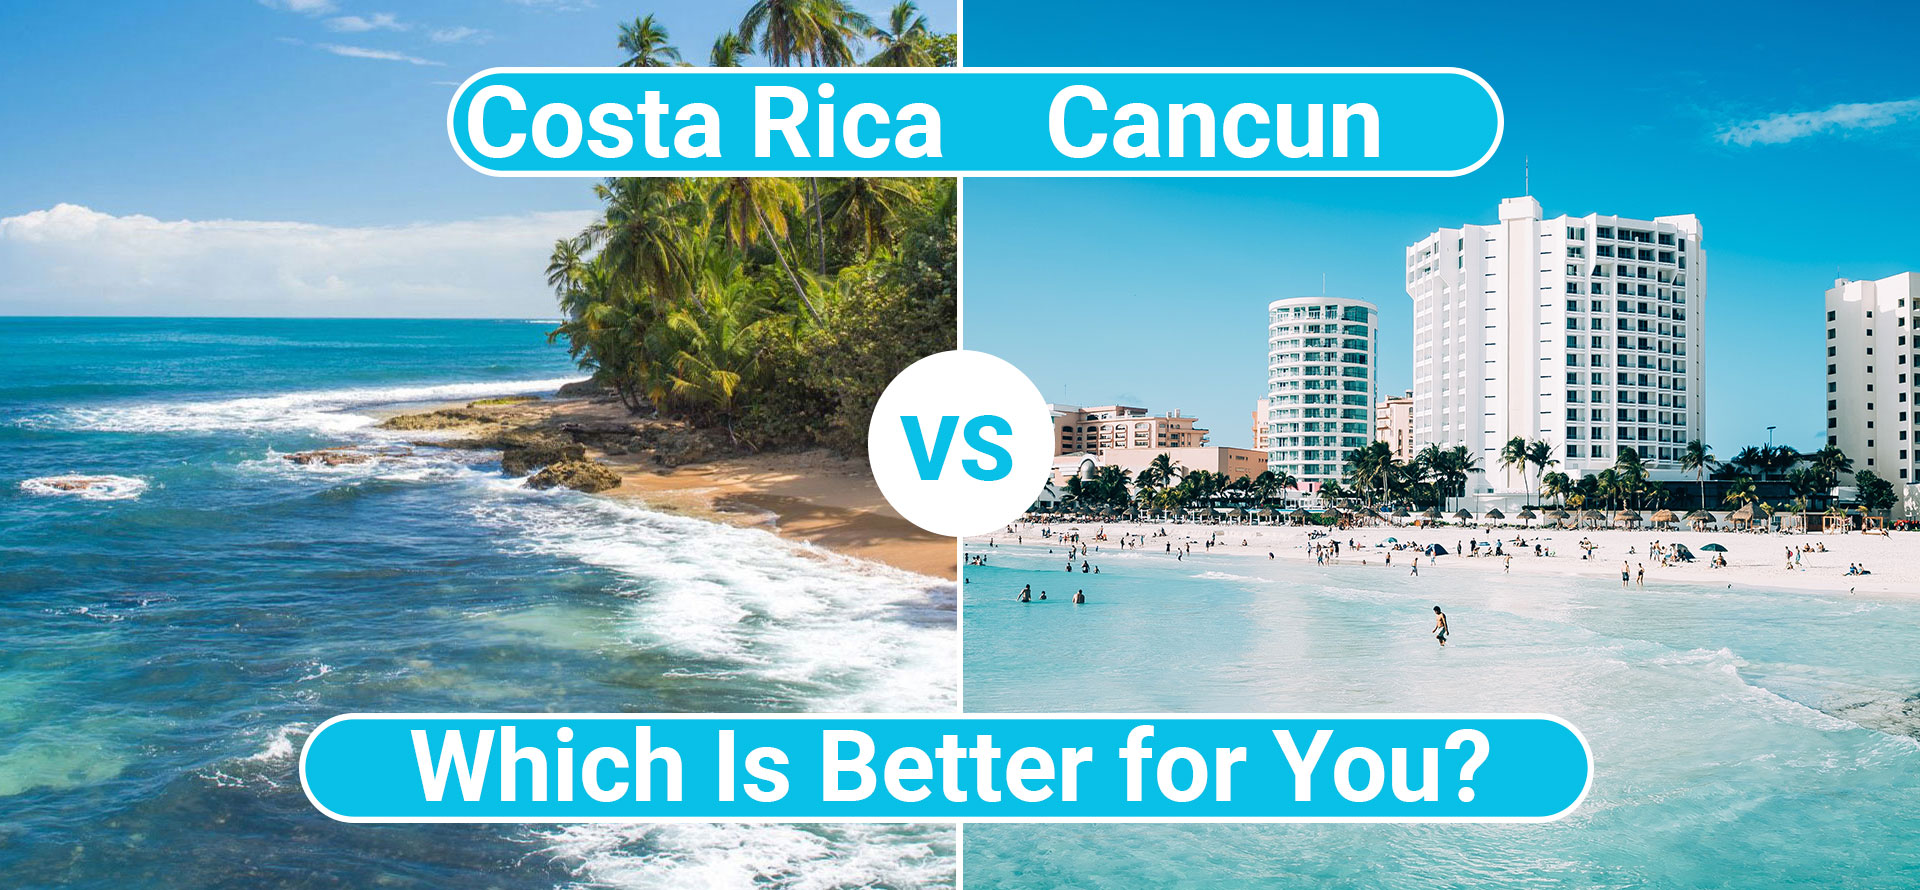 Costa rica vs cancun.